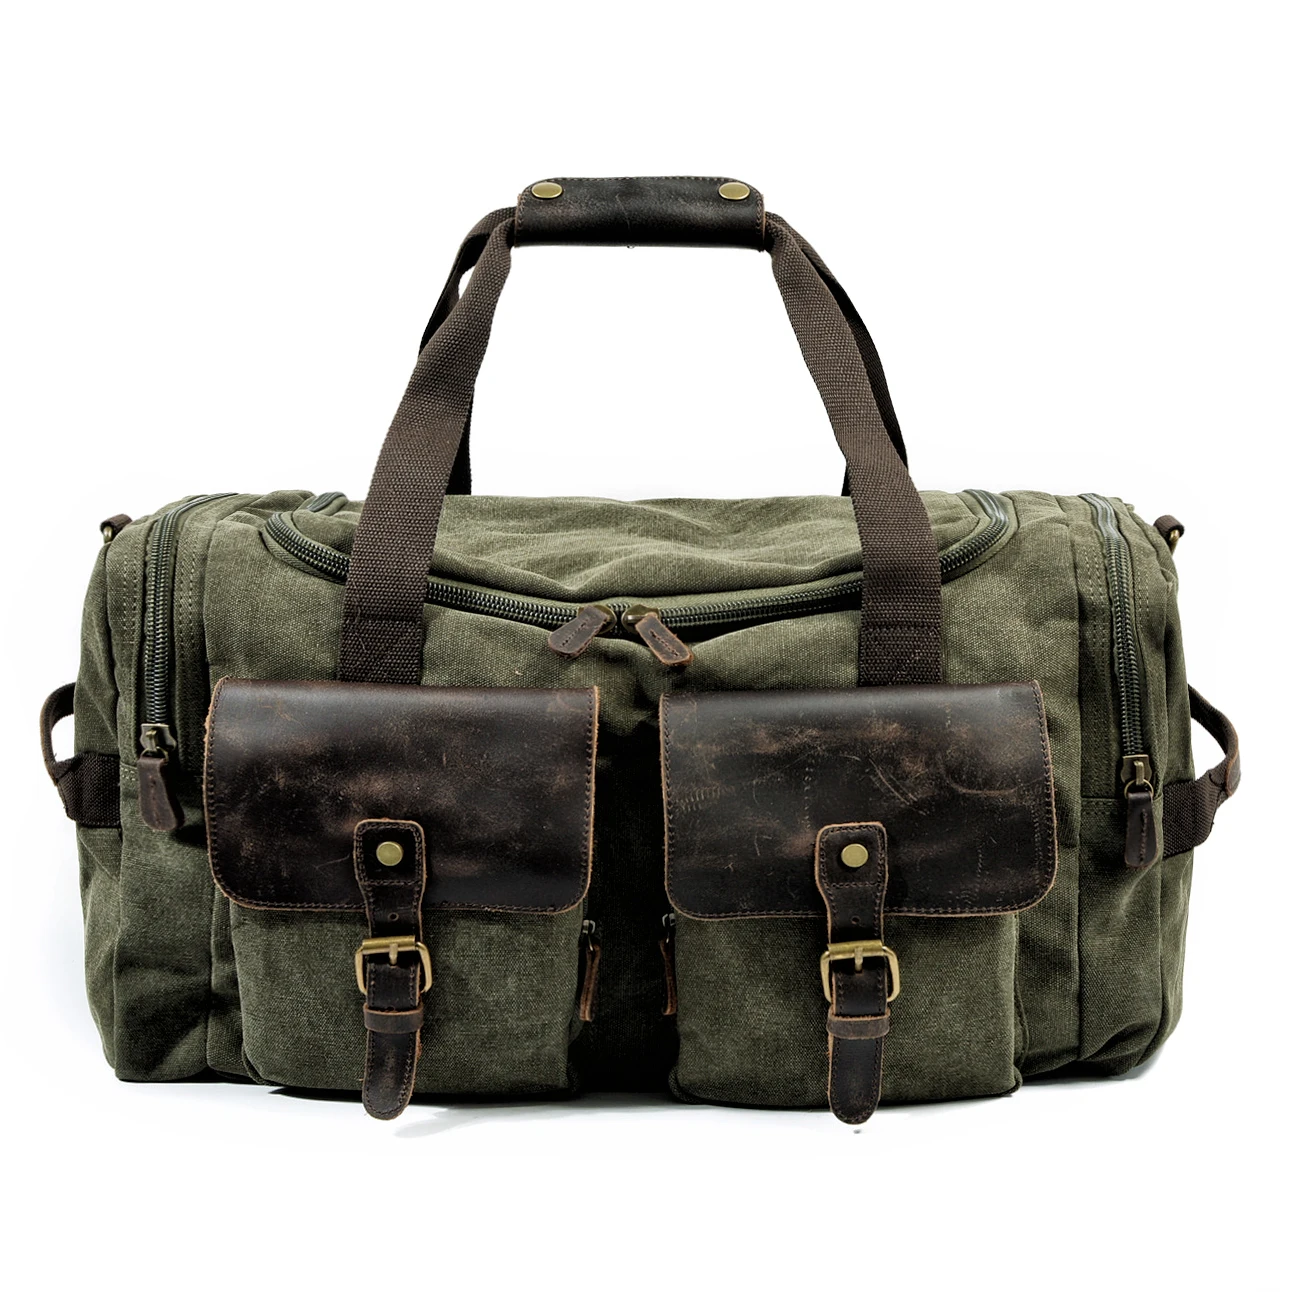 MUCHUAN мужские холщовые кожаные дорожные сумки, сумки для переноски багажа, большие дорожные сумки, большие сумки для путешествий, сумки для путешествий, большие сумки на выходные, сумки на ночь - Цвет: Армейский зеленый